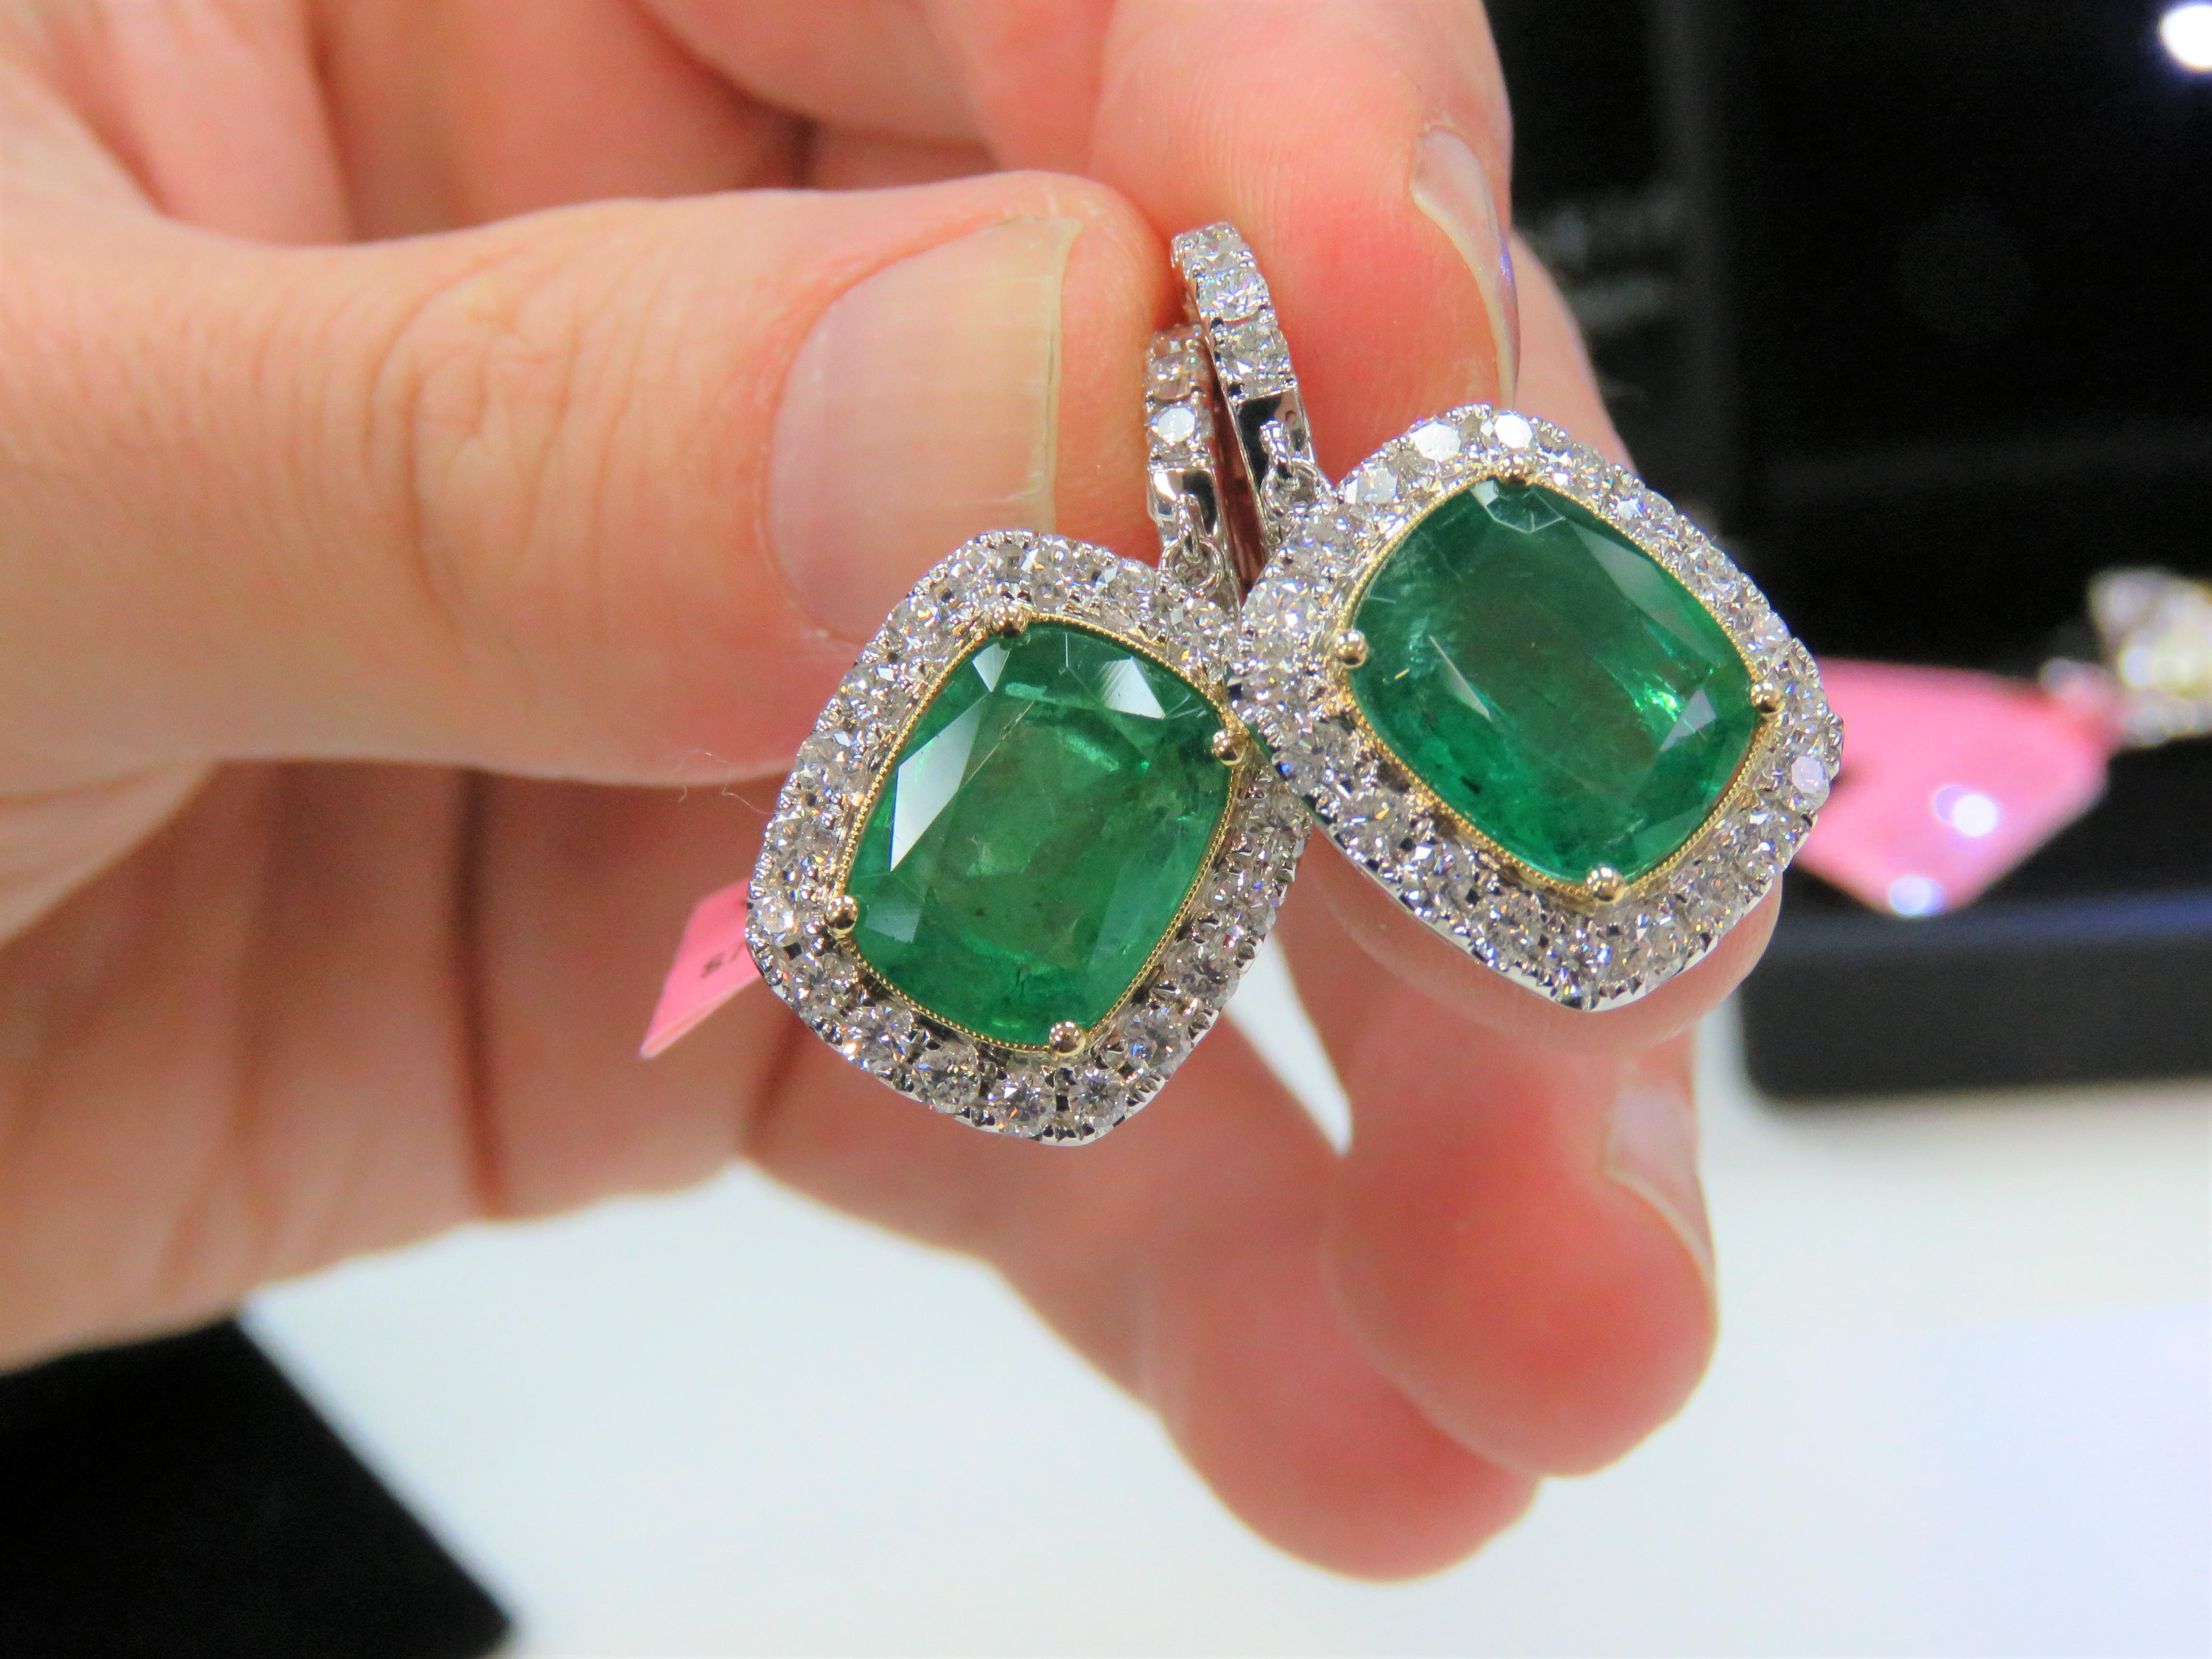 Die folgenden Elemente, die wir anbieten, ist ein Paar von seltenen 18KT Gold Large Emerald Diamond Dangle Earrings. Die Ohrringe bestehen aus fein gesetzten wunderschönen großen grünen Smaragd-Diamant-Ohrringen, die mit großen runden Diamanten im